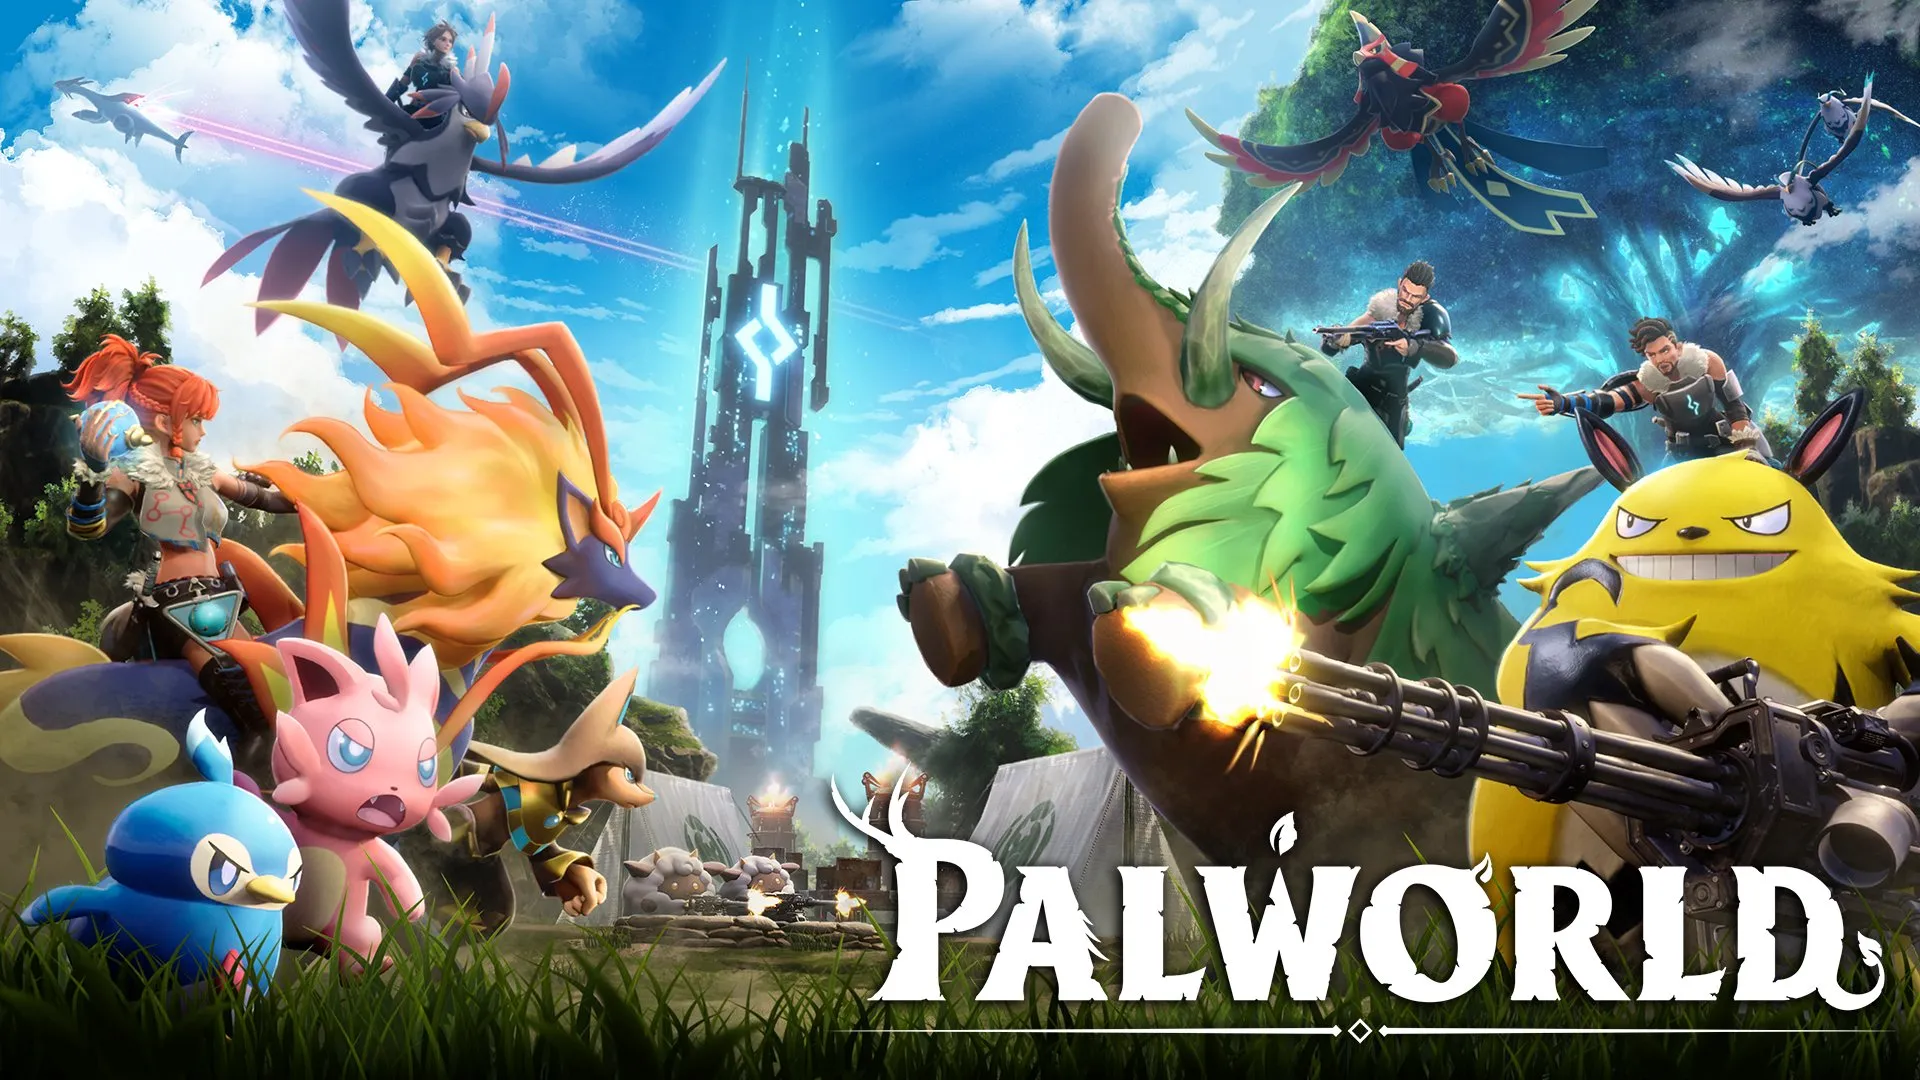 Число игроков Palworld превысило 19 миллионов